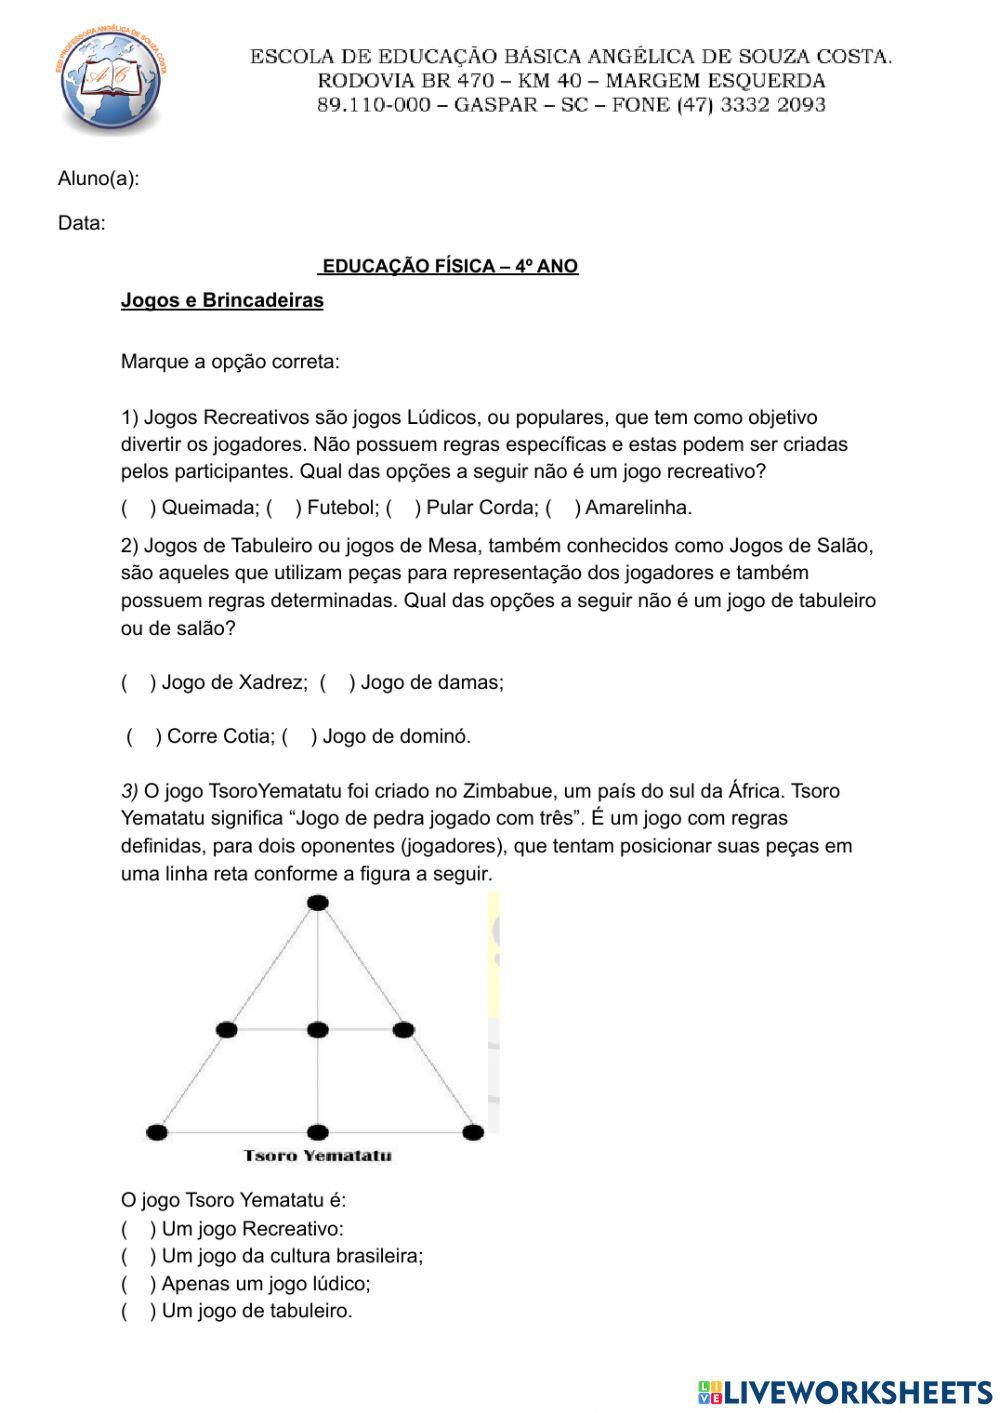 Educação Física online pdf activity for 4º Ano